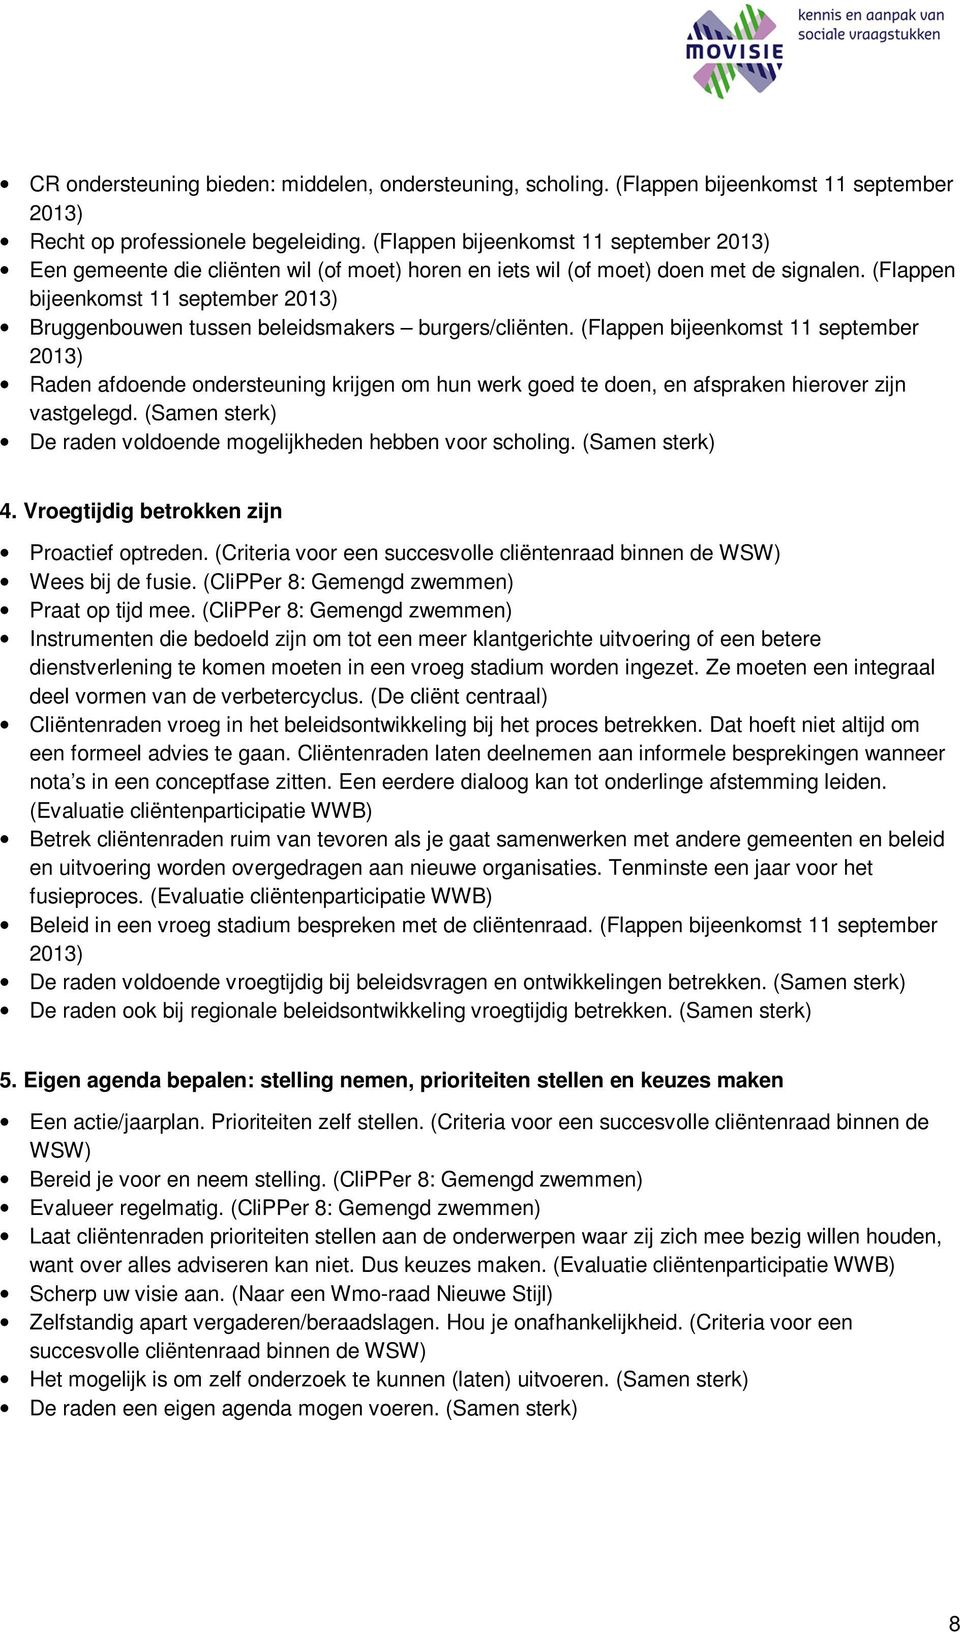 (Flappen bijeenkomst 11 september 2013) Bruggenbouwen tussen beleidsmakers burgers/cliënten.